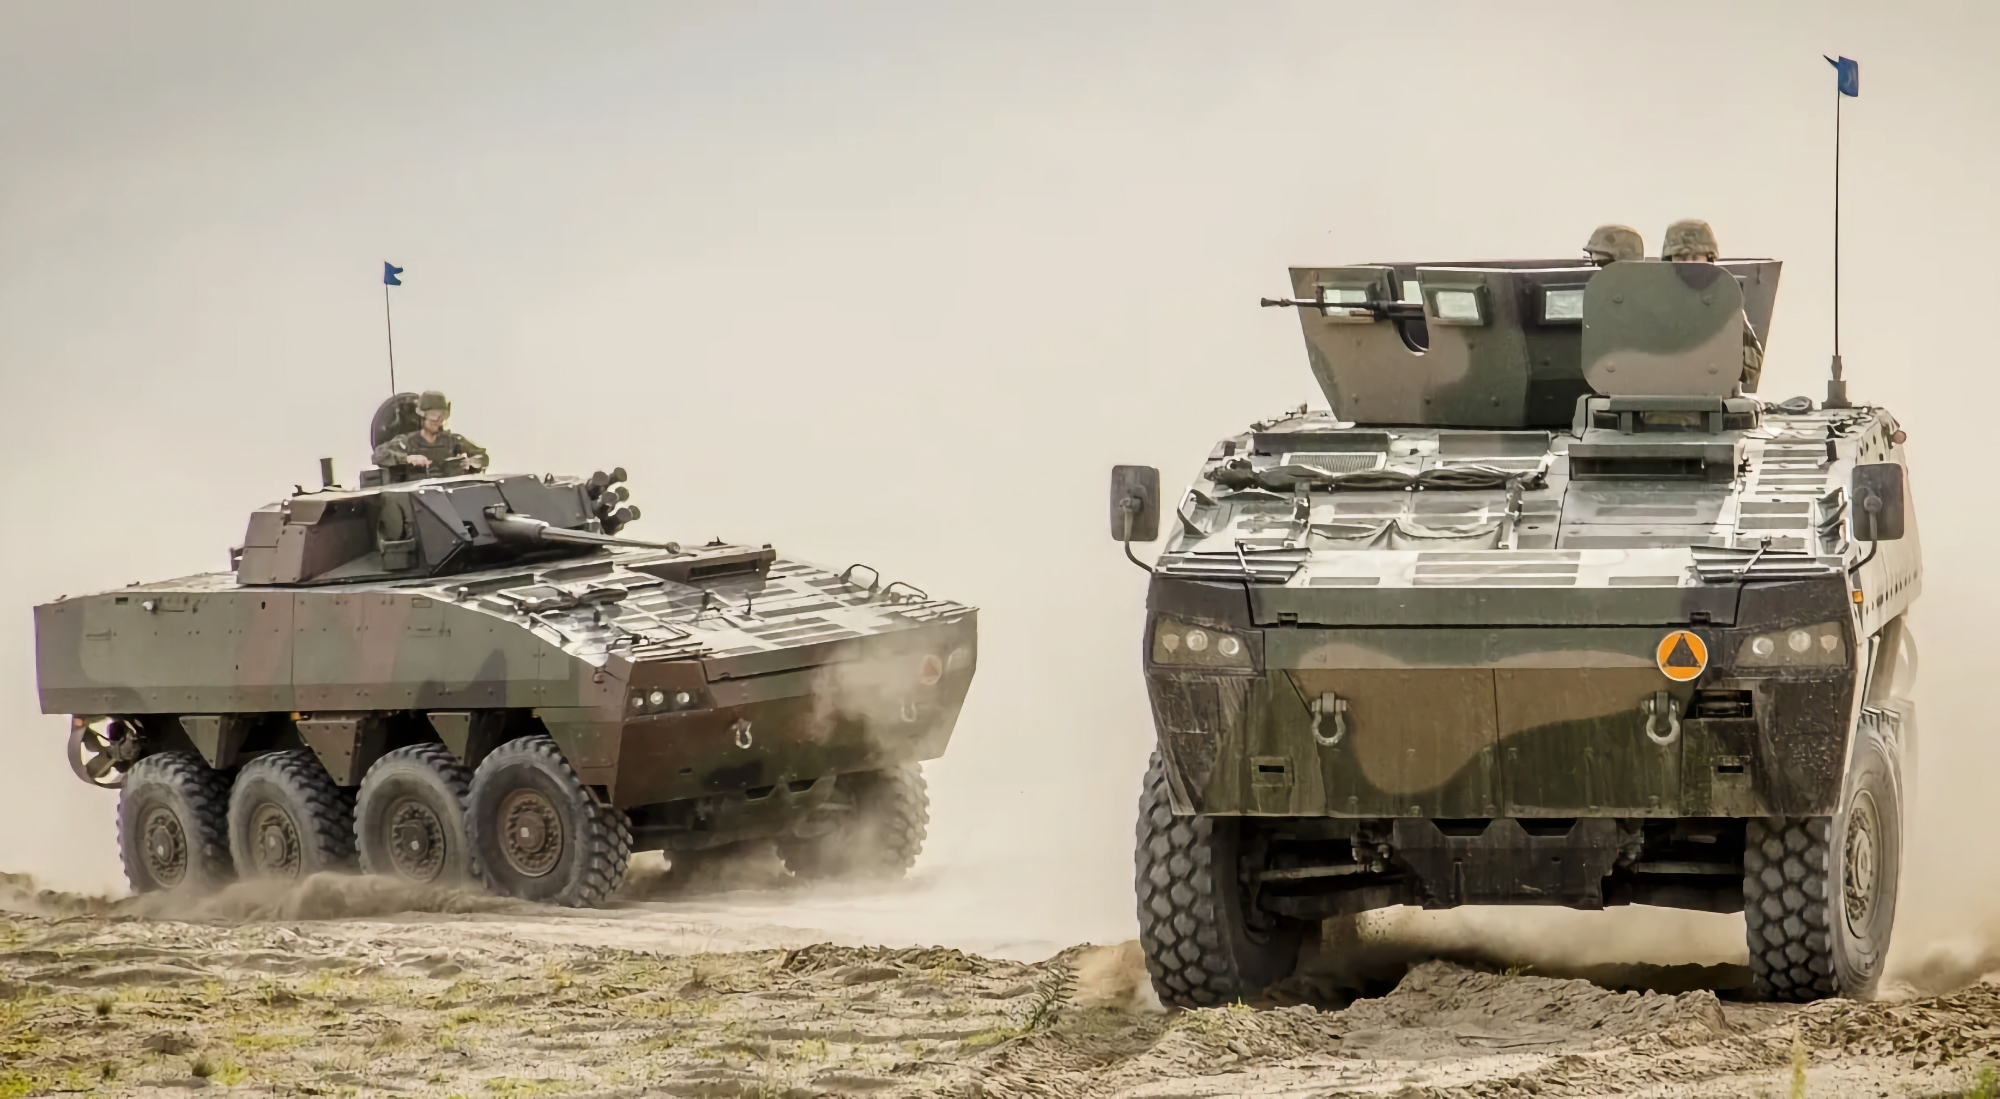 AFU bruger allerede polske Rosomak pansrede mandskabsvogne, kampkøretøjerne vises i videoen sammen med Stridsvagn 122 kampvogne og CV9040 BMP'er.